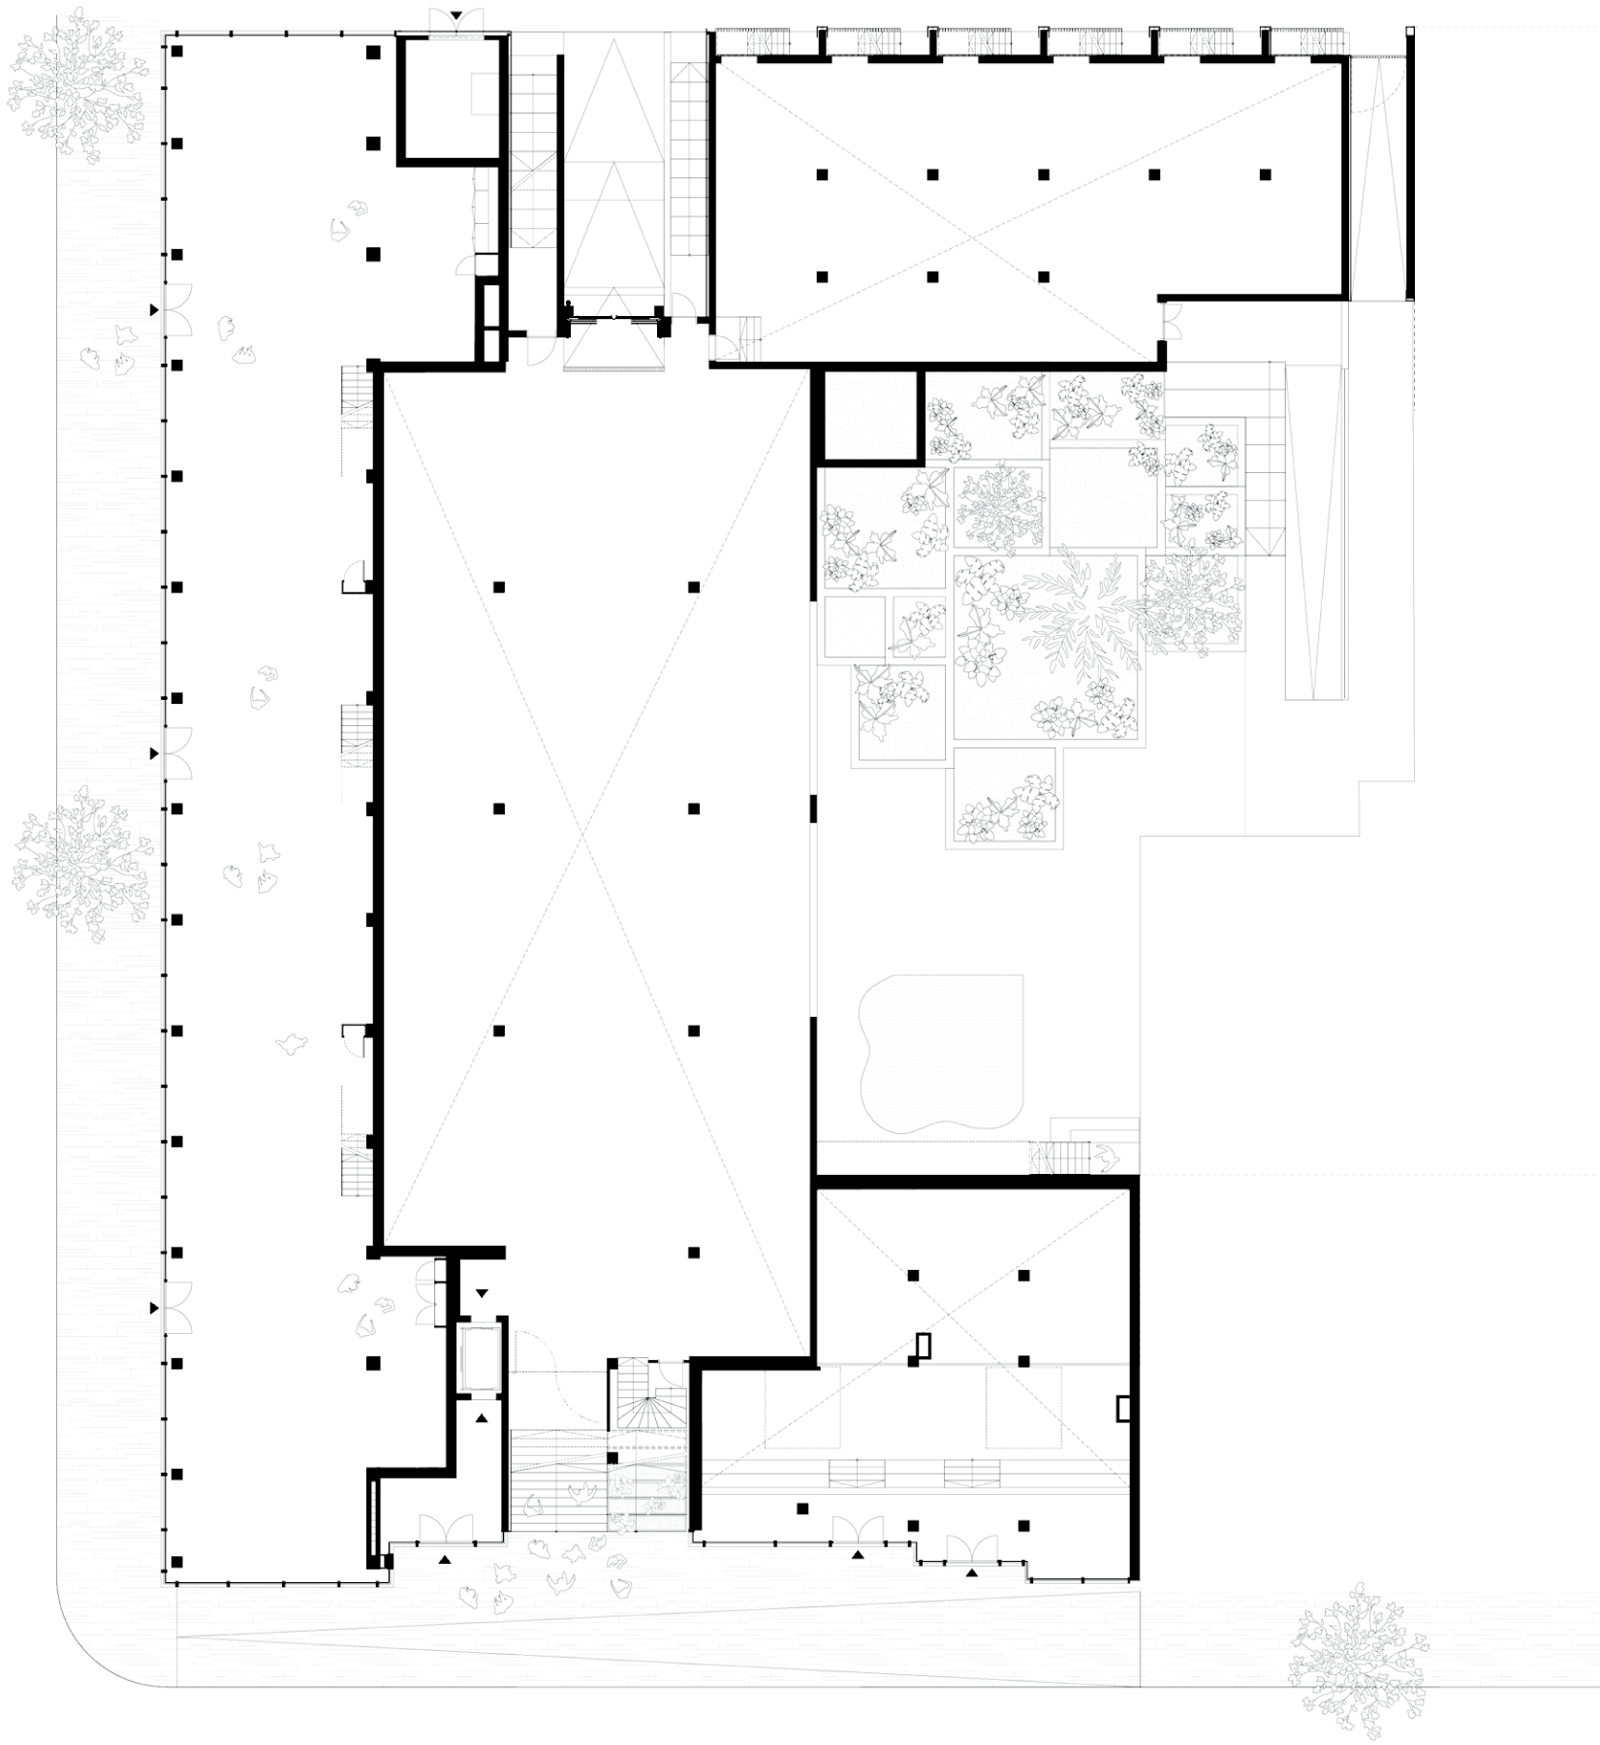 Plan av første etasje på boligblokk. Arkitekt tegning.